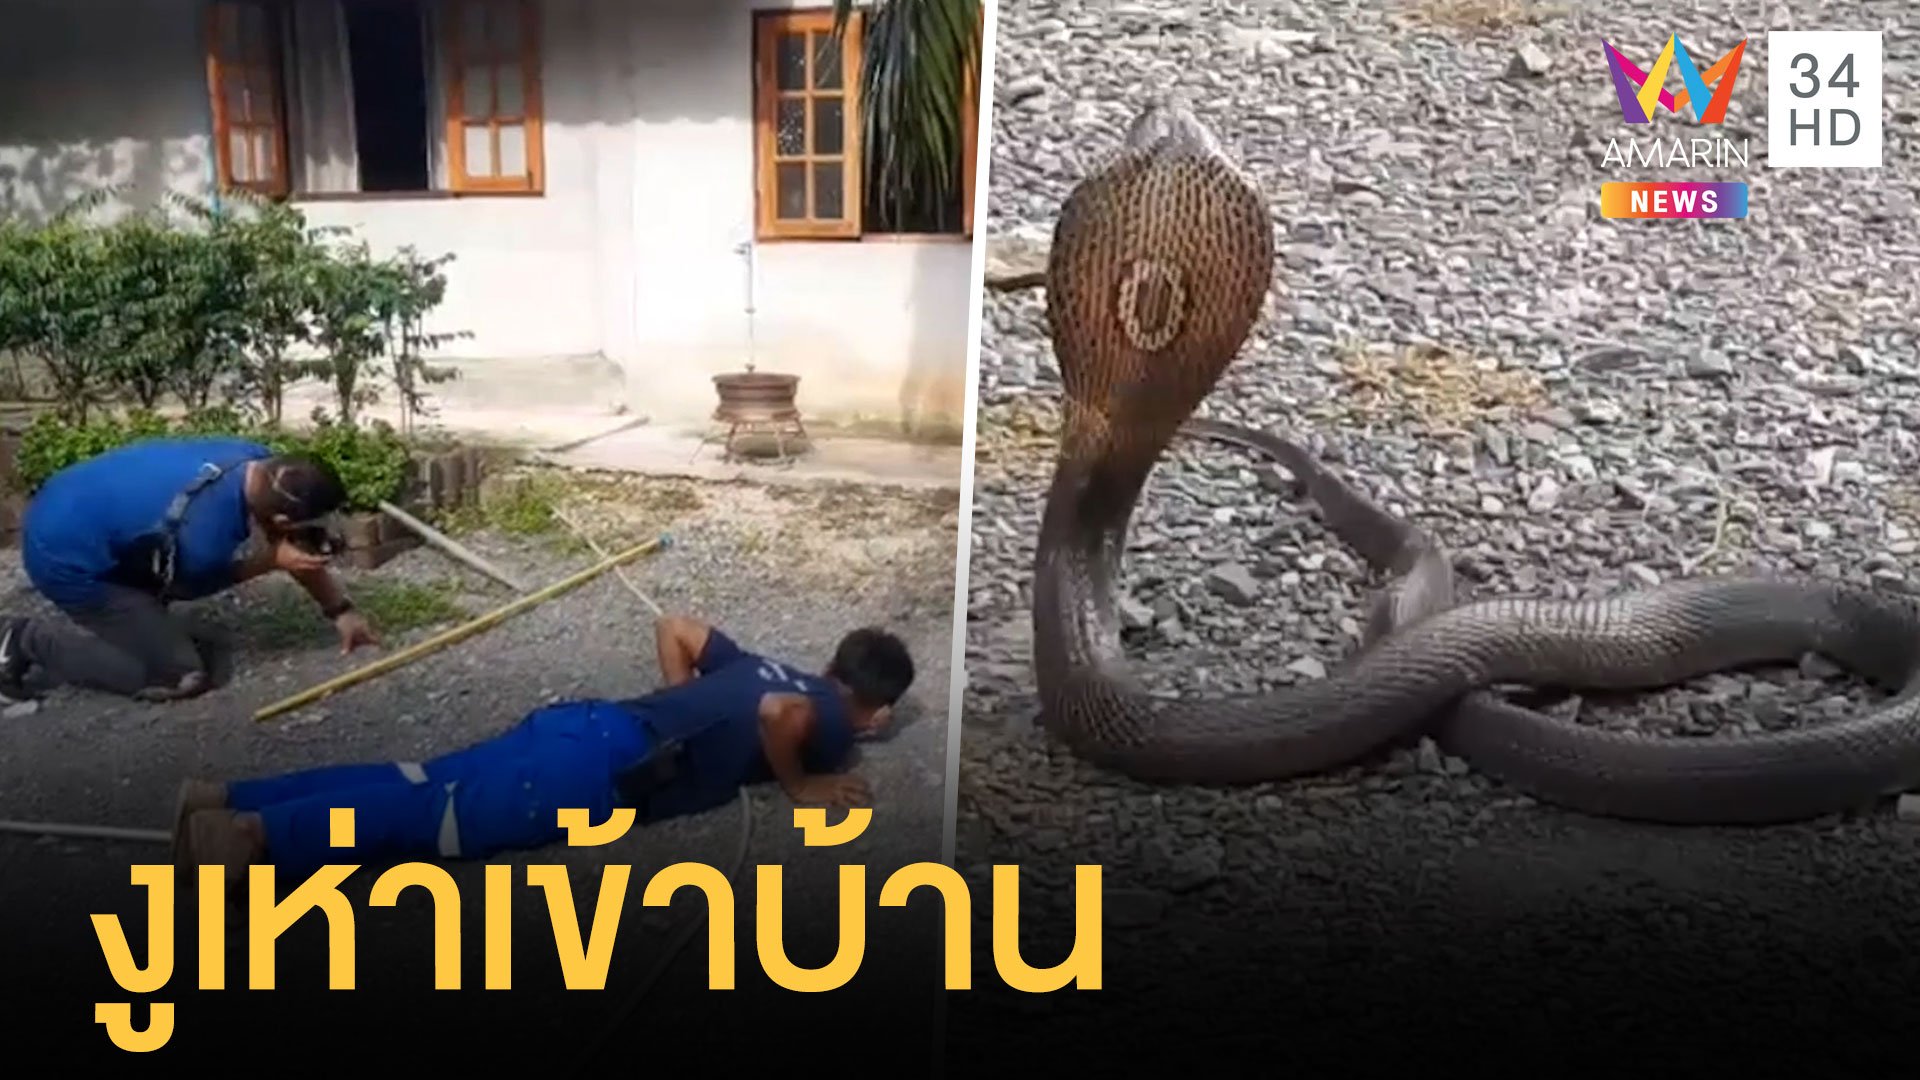 งูเห่ามุดใต้บ้านแผ่แม่เบี้ยดุใส่กู้ภัย | ข่าวอรุณอมรินทร์ | 20 ก.ย. 64 | AMARIN TVHD34